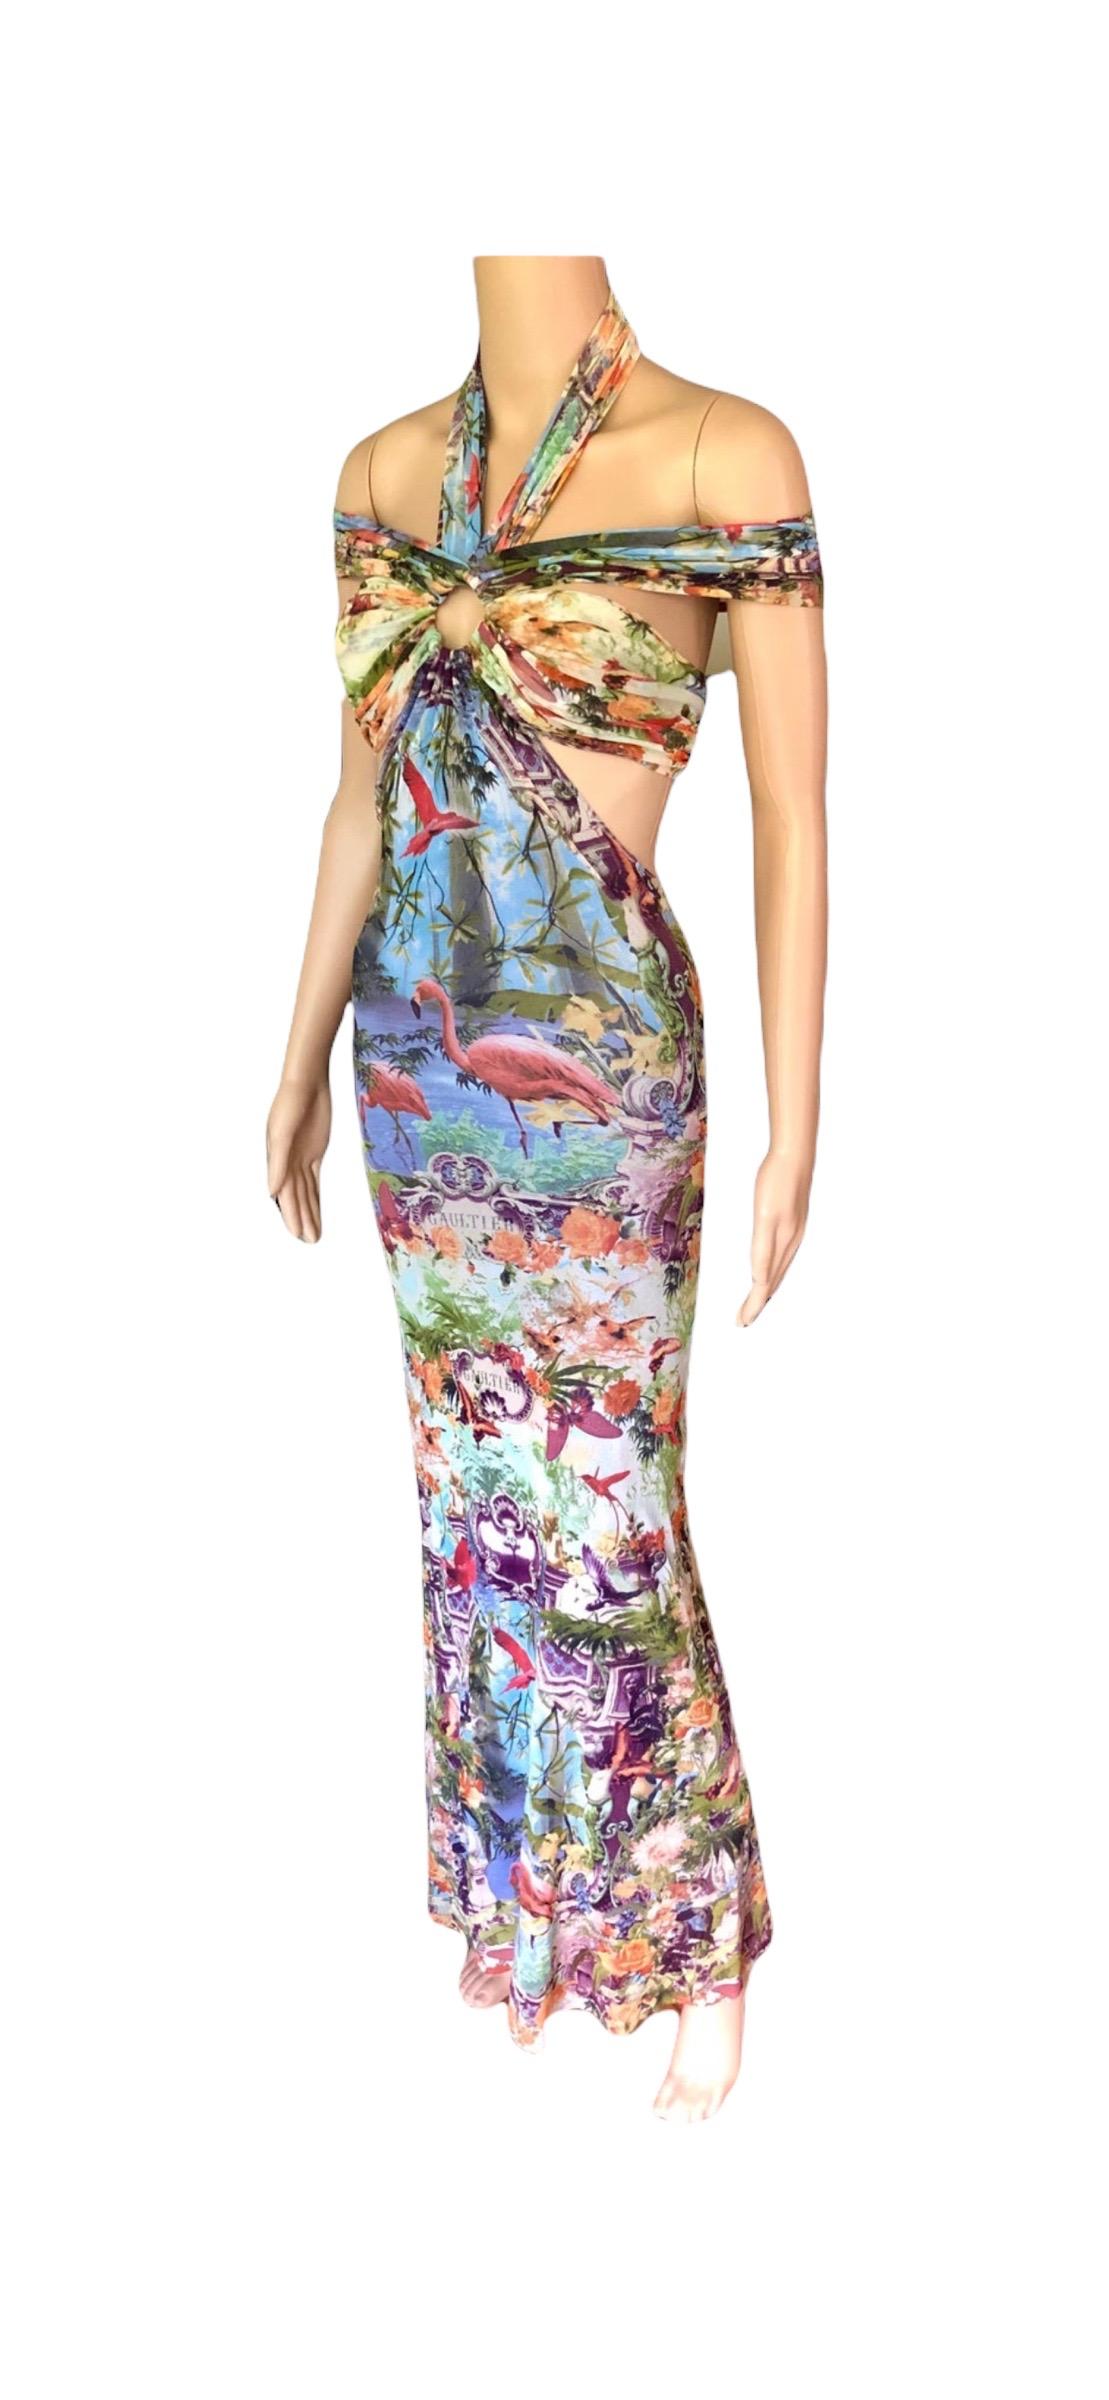 Jean Paul Gaultier Soleil S/S1999 Flamingo Tropical Print Cutout Mesh Maxi Dress For Sale 8